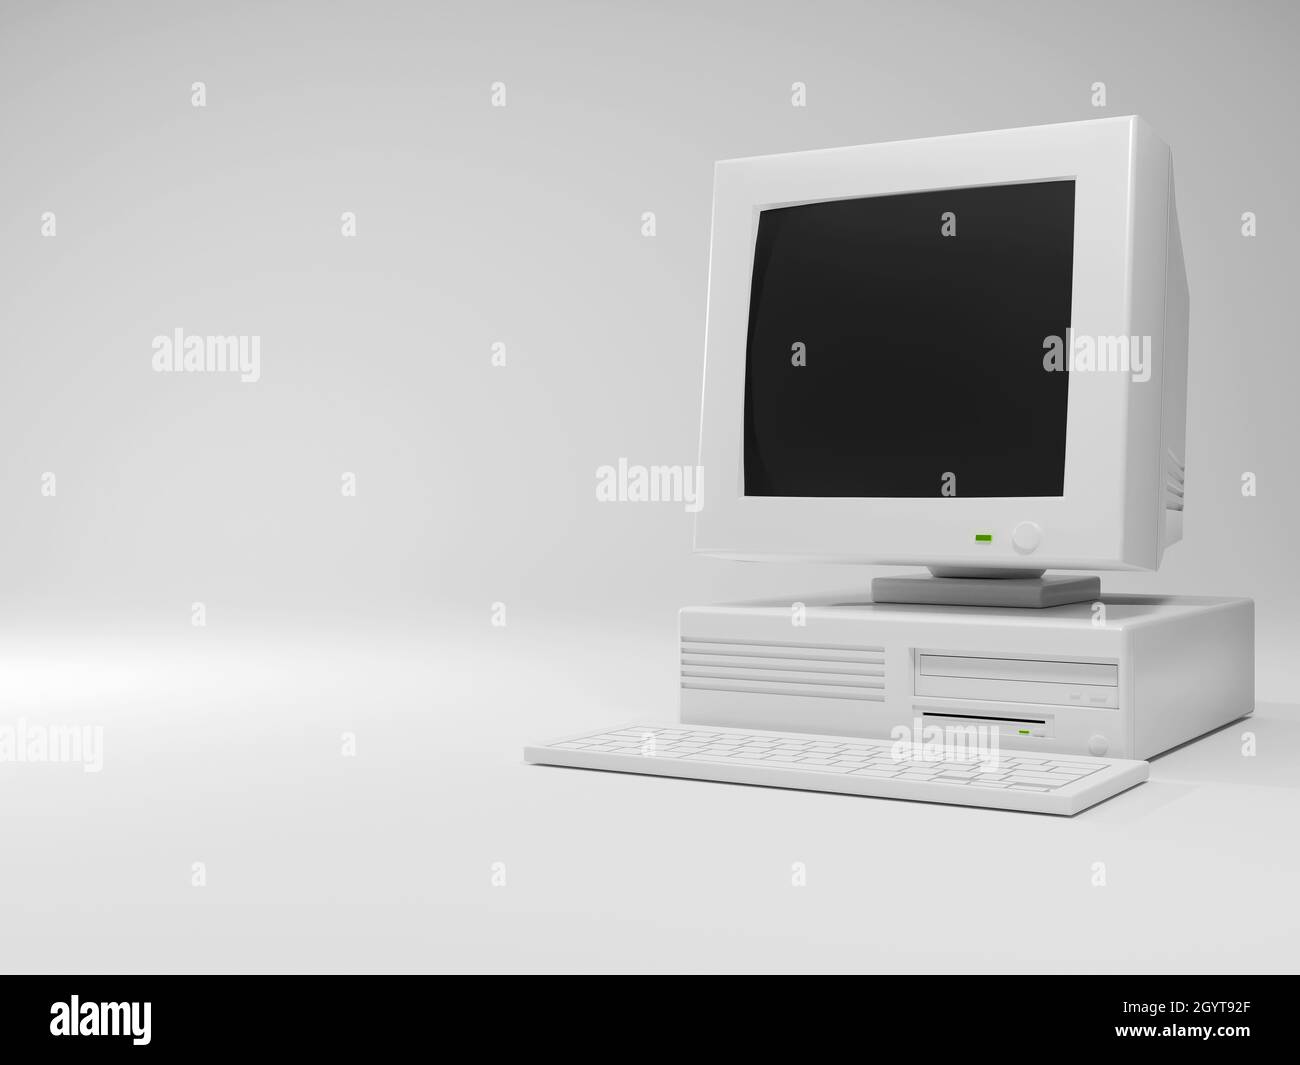 Computer Vecchio Desktop Retro Vintage Pc Con Schermo Nero Monitor E Case 3d Rendering Illustrazione Design Su Sfondo Bianco Programmatore Per Programmi Foto Stock Alamy